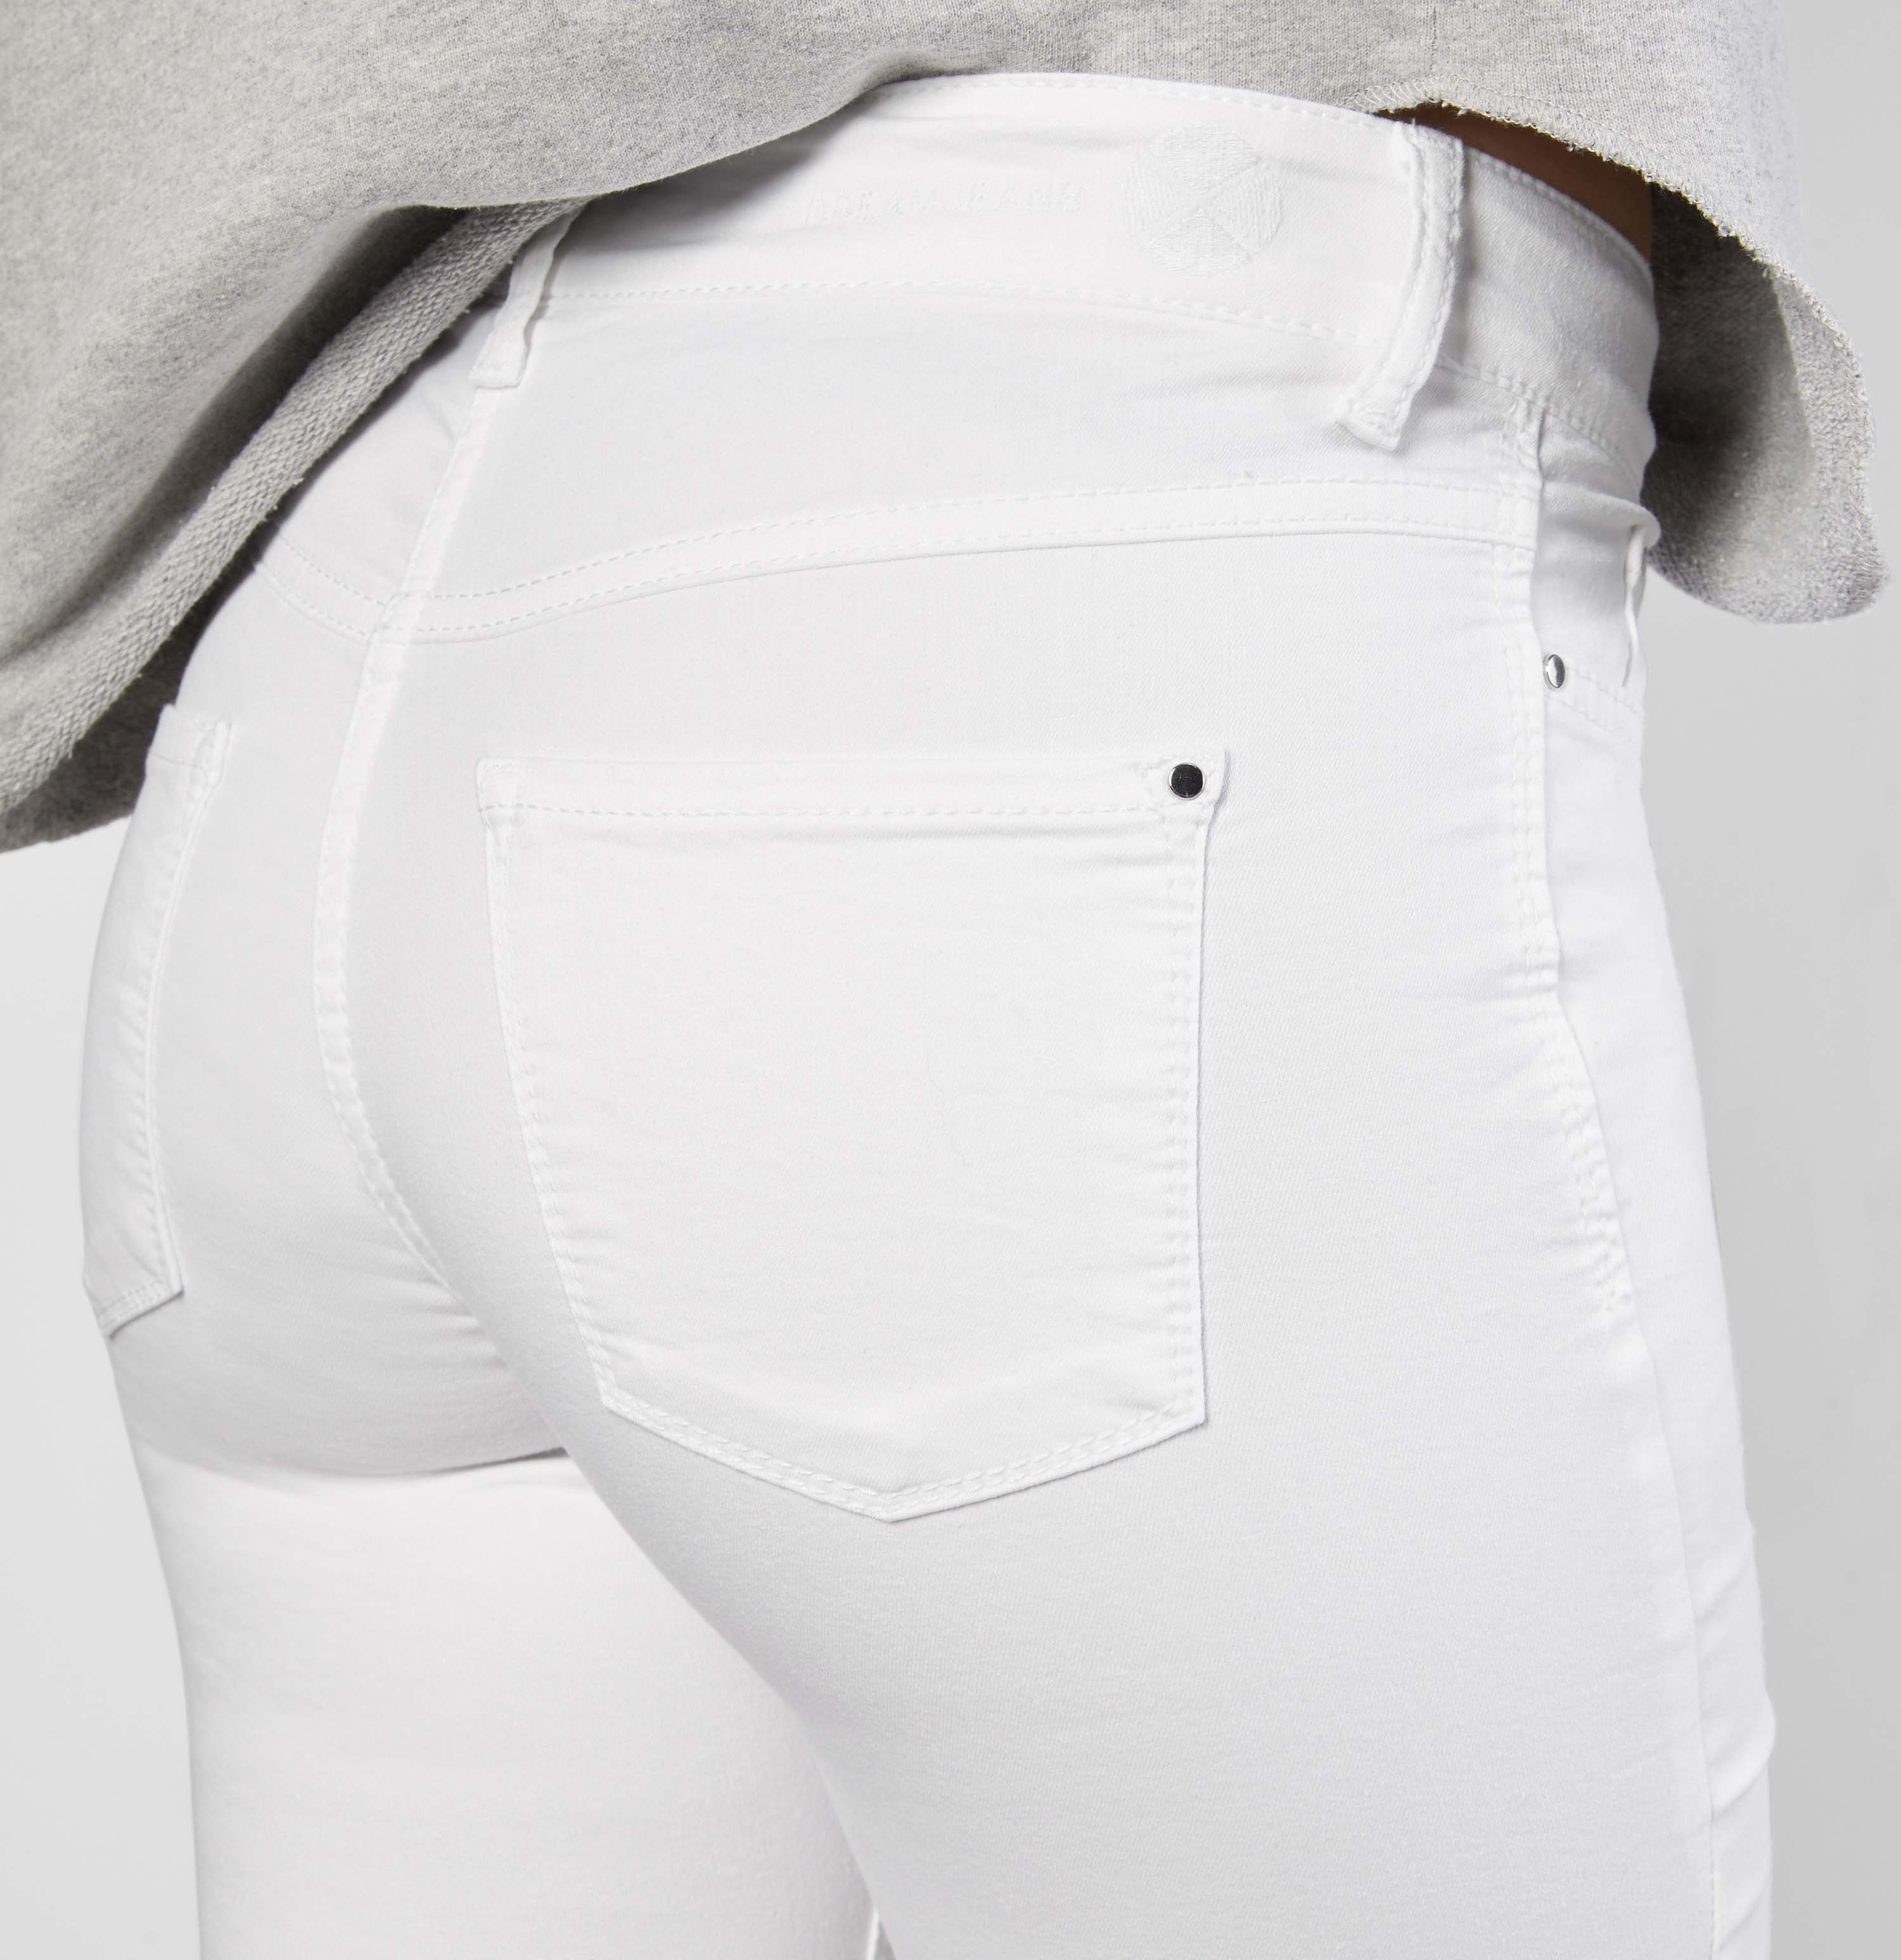 Hochelastische Qualität sorgt Sitz Skinny-fit-Jeans den für perfekten MAC Skinny Dream whitedenim